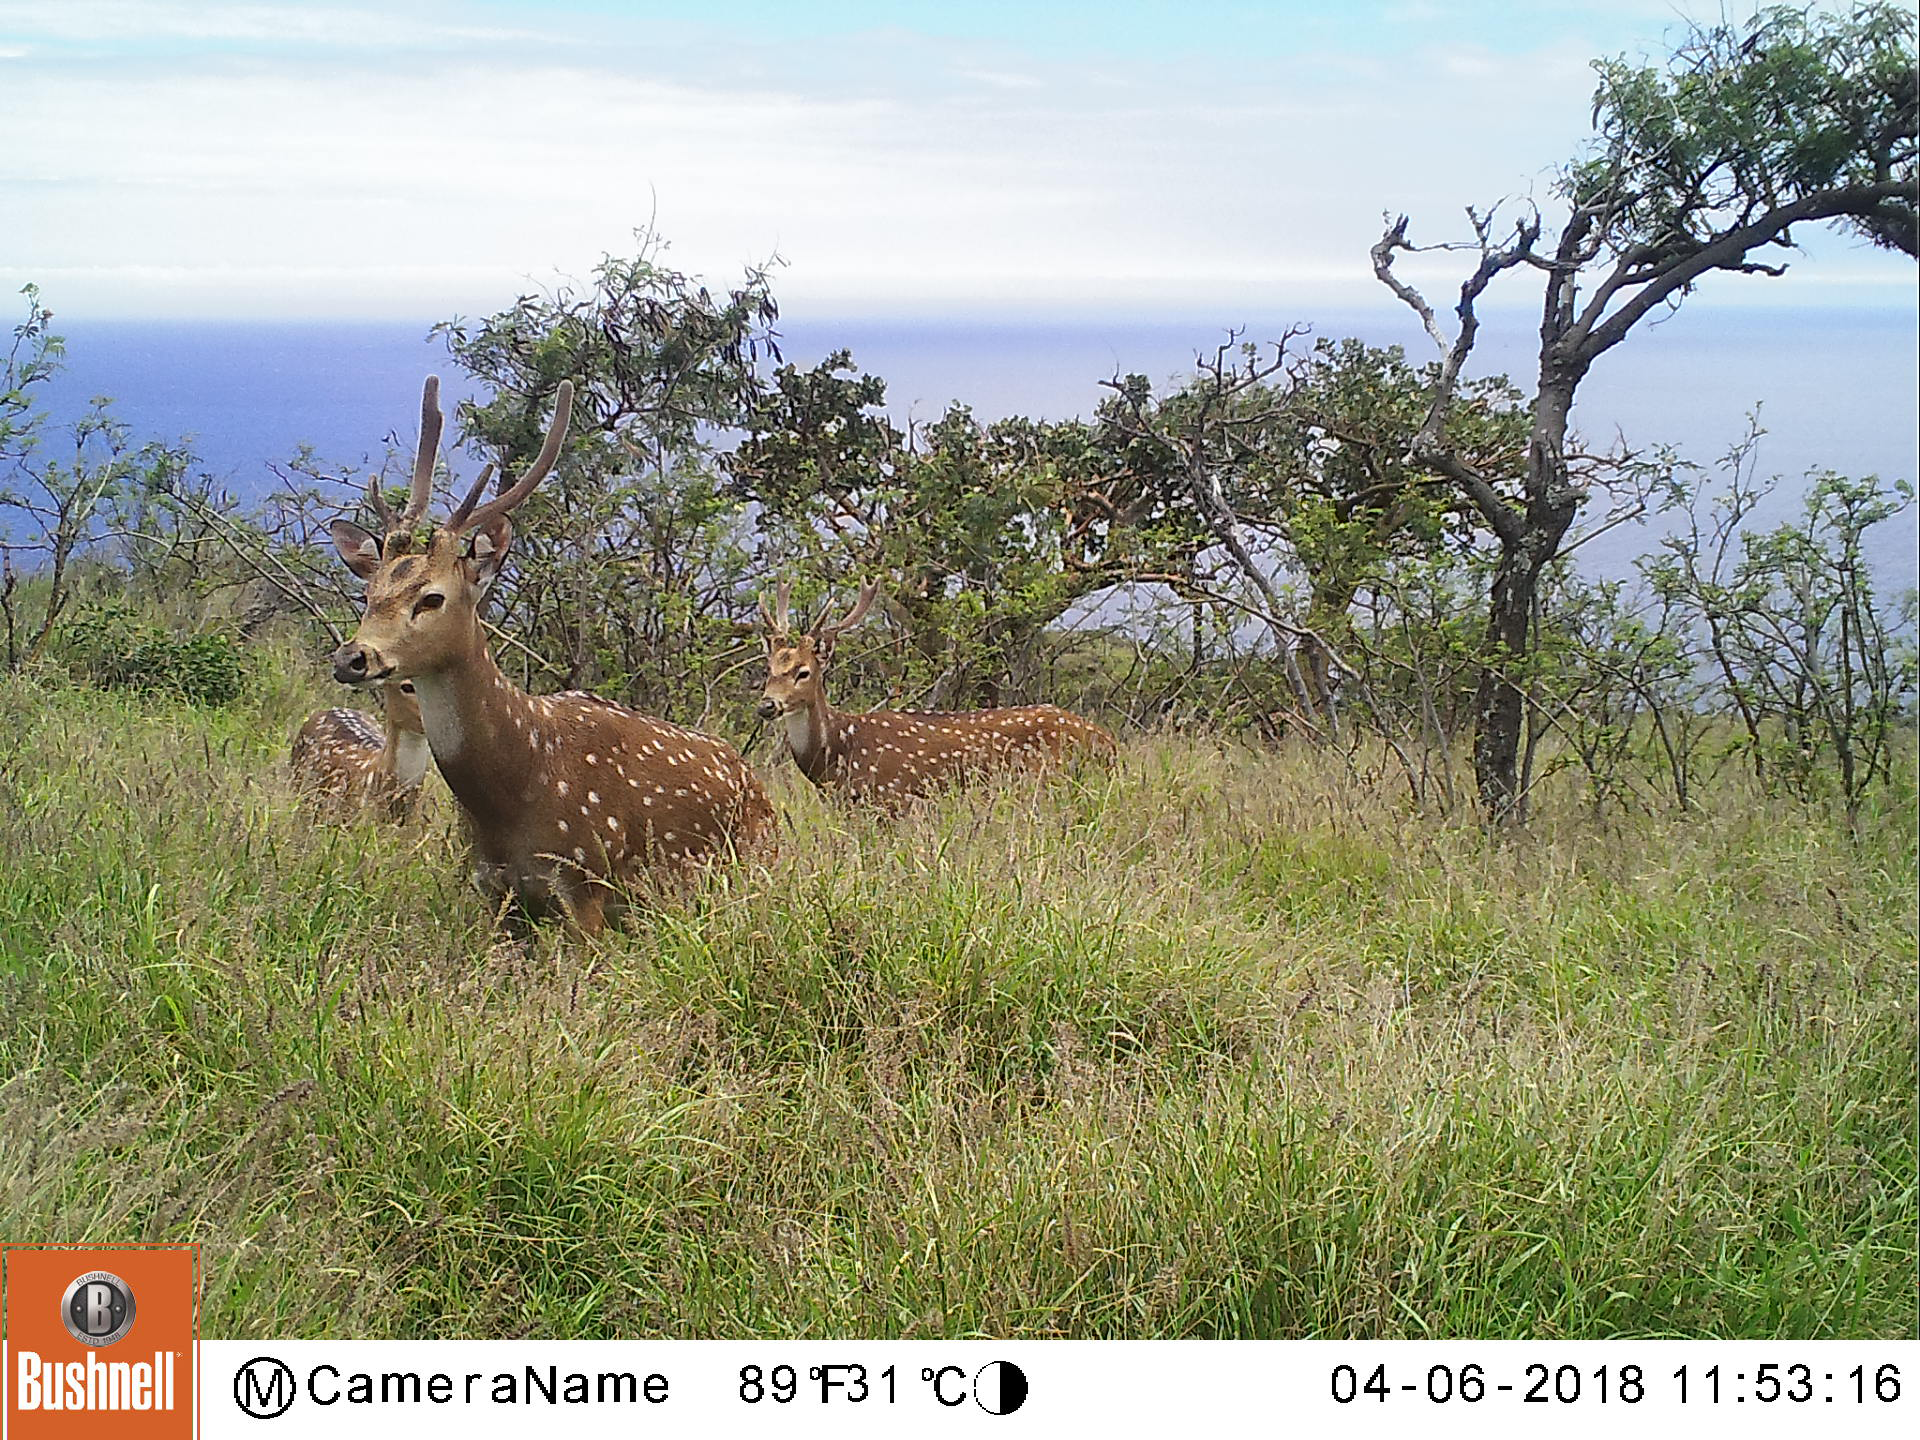 Axis deer on Maui